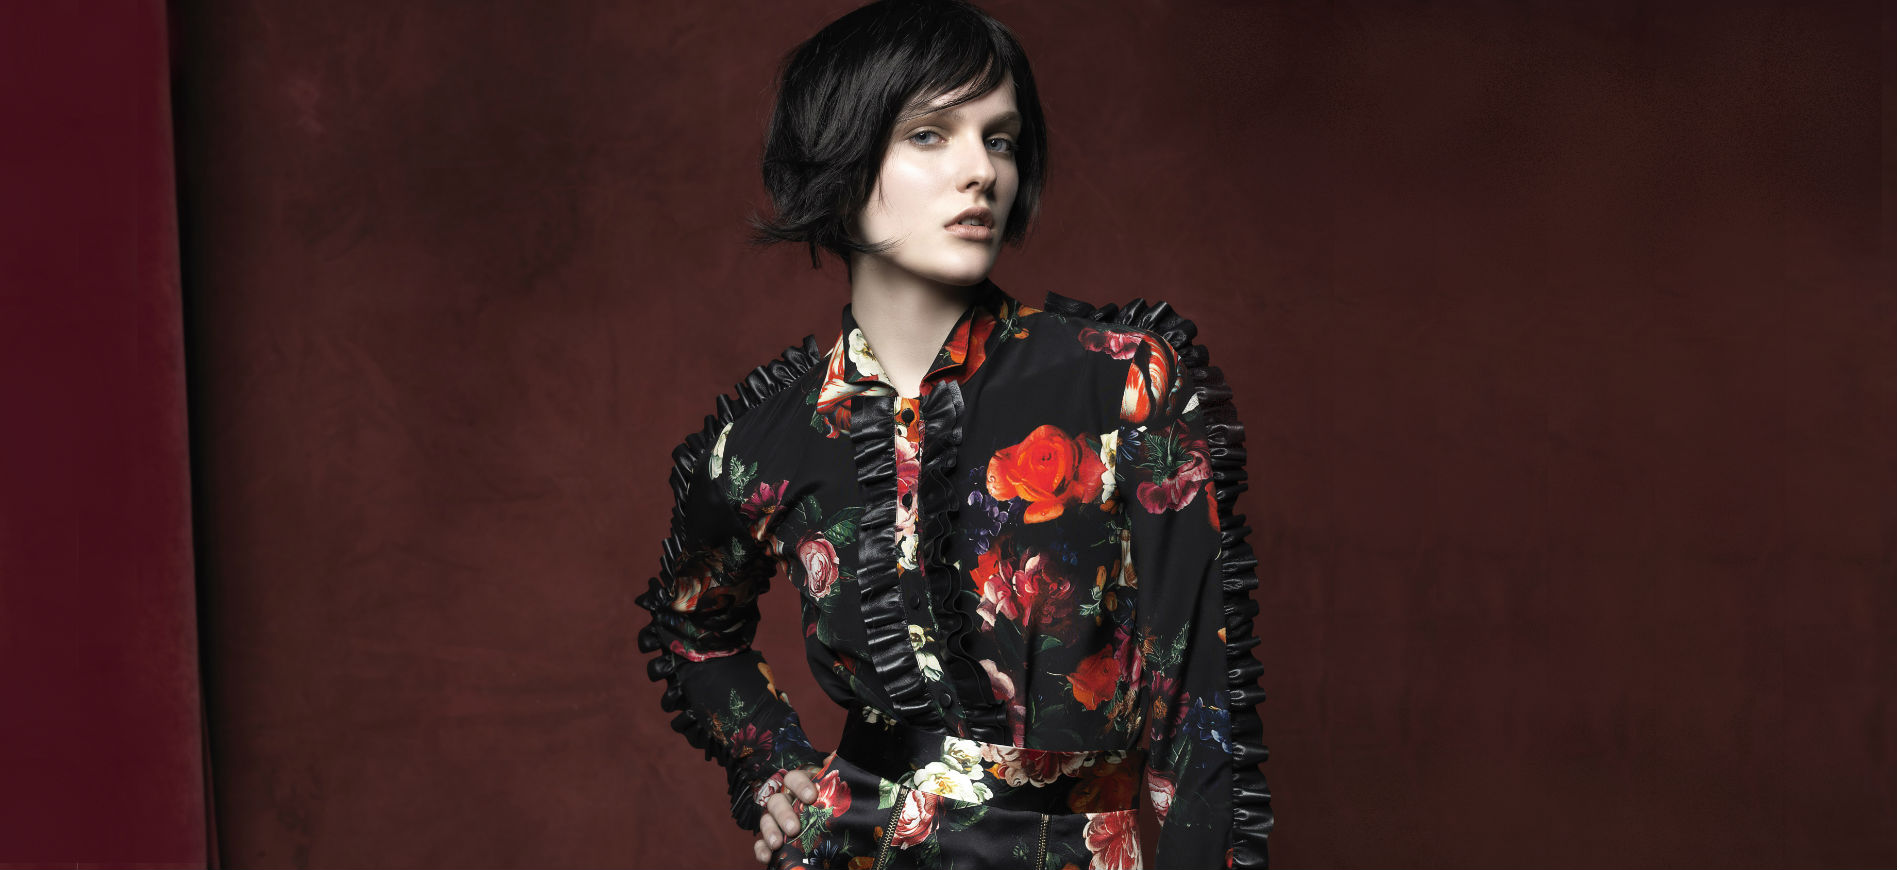 Vladimiro Gioia - Milano Fashion Week: modella indossa una camicia a fiori